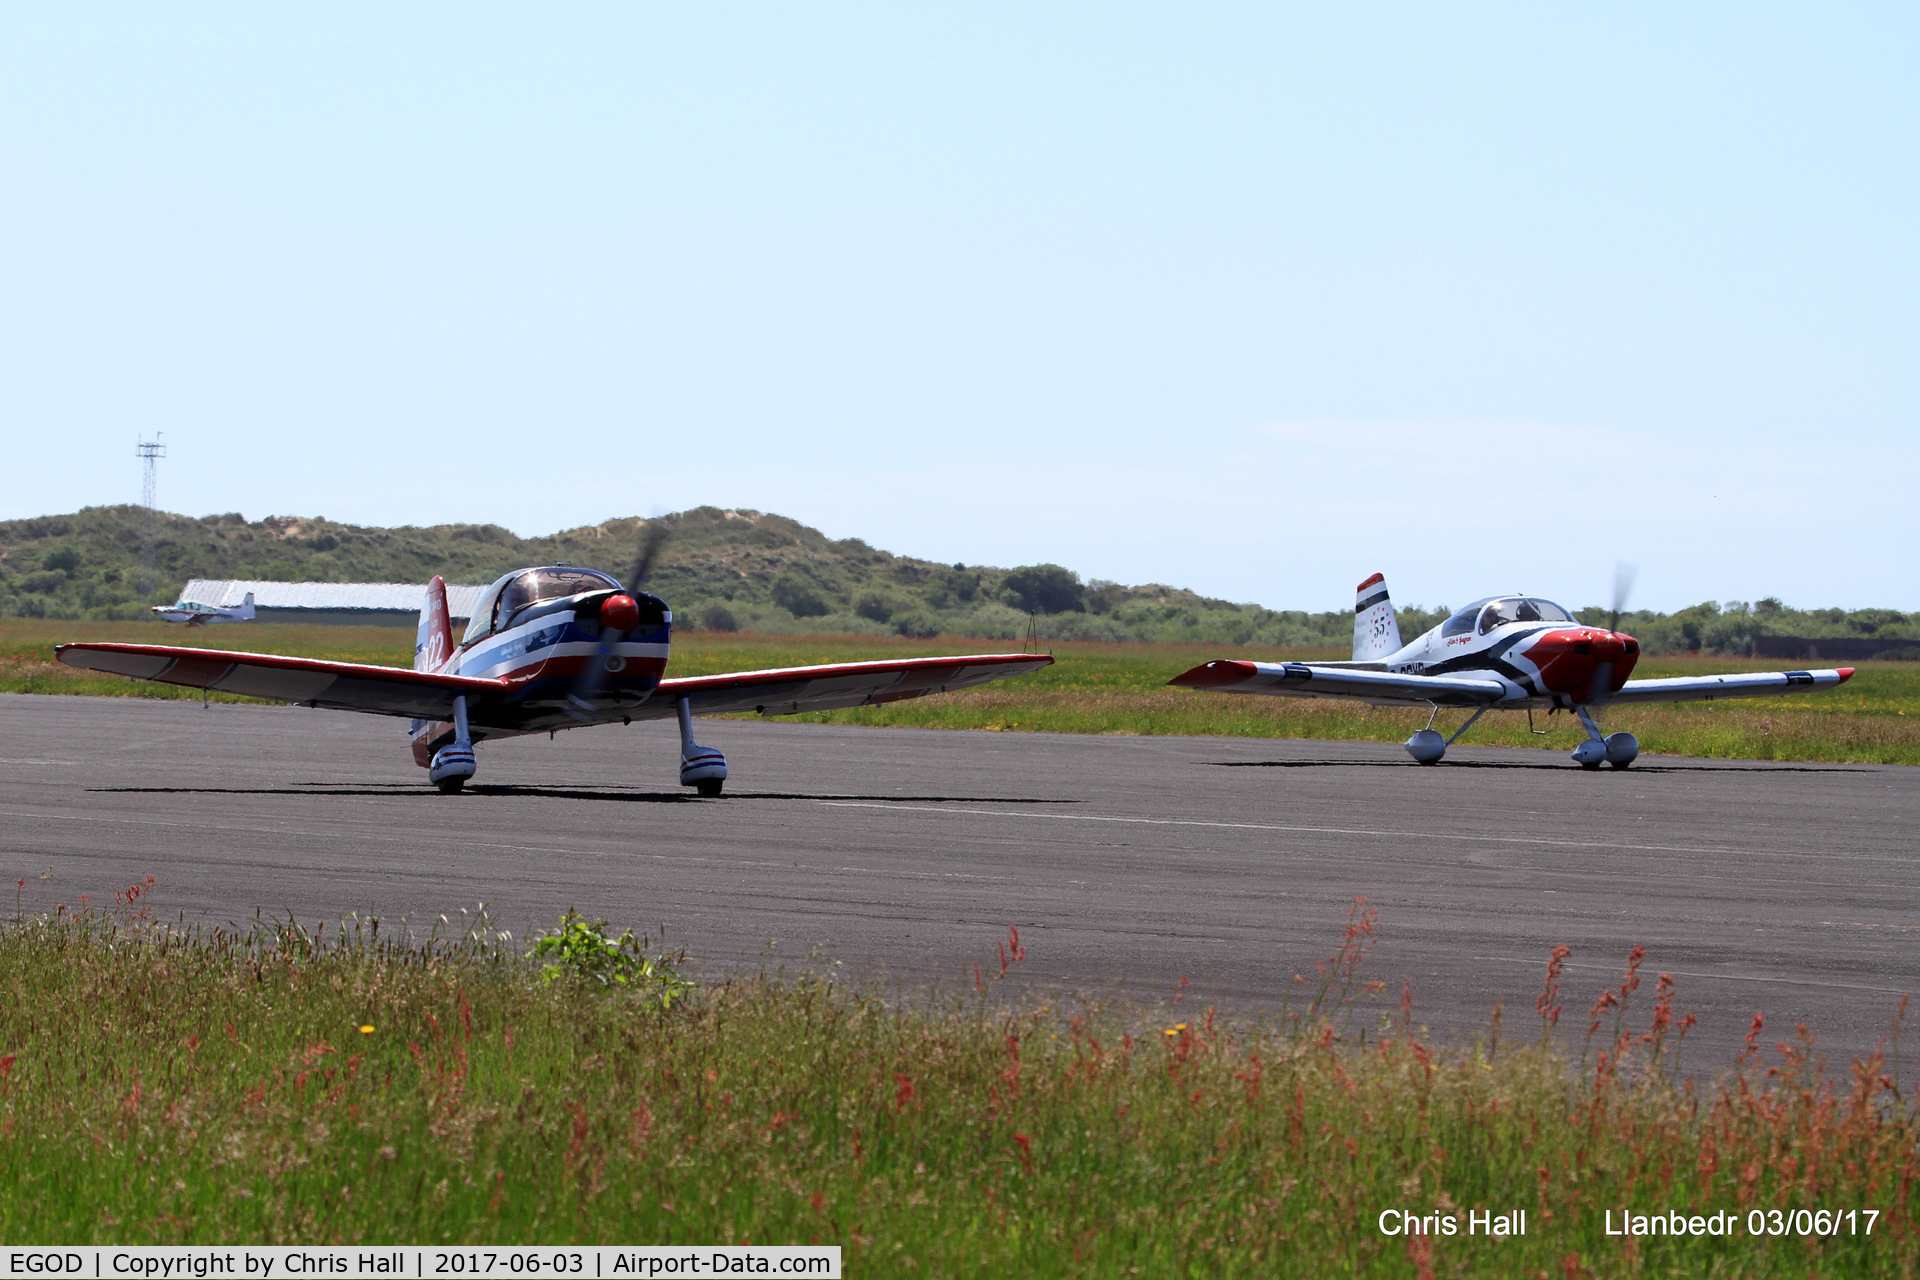 Llanbedr Airport, Llanbedr, Wales United Kingdom (EGOD) - Royal Aero Club 3Rs air race at Llanbedr